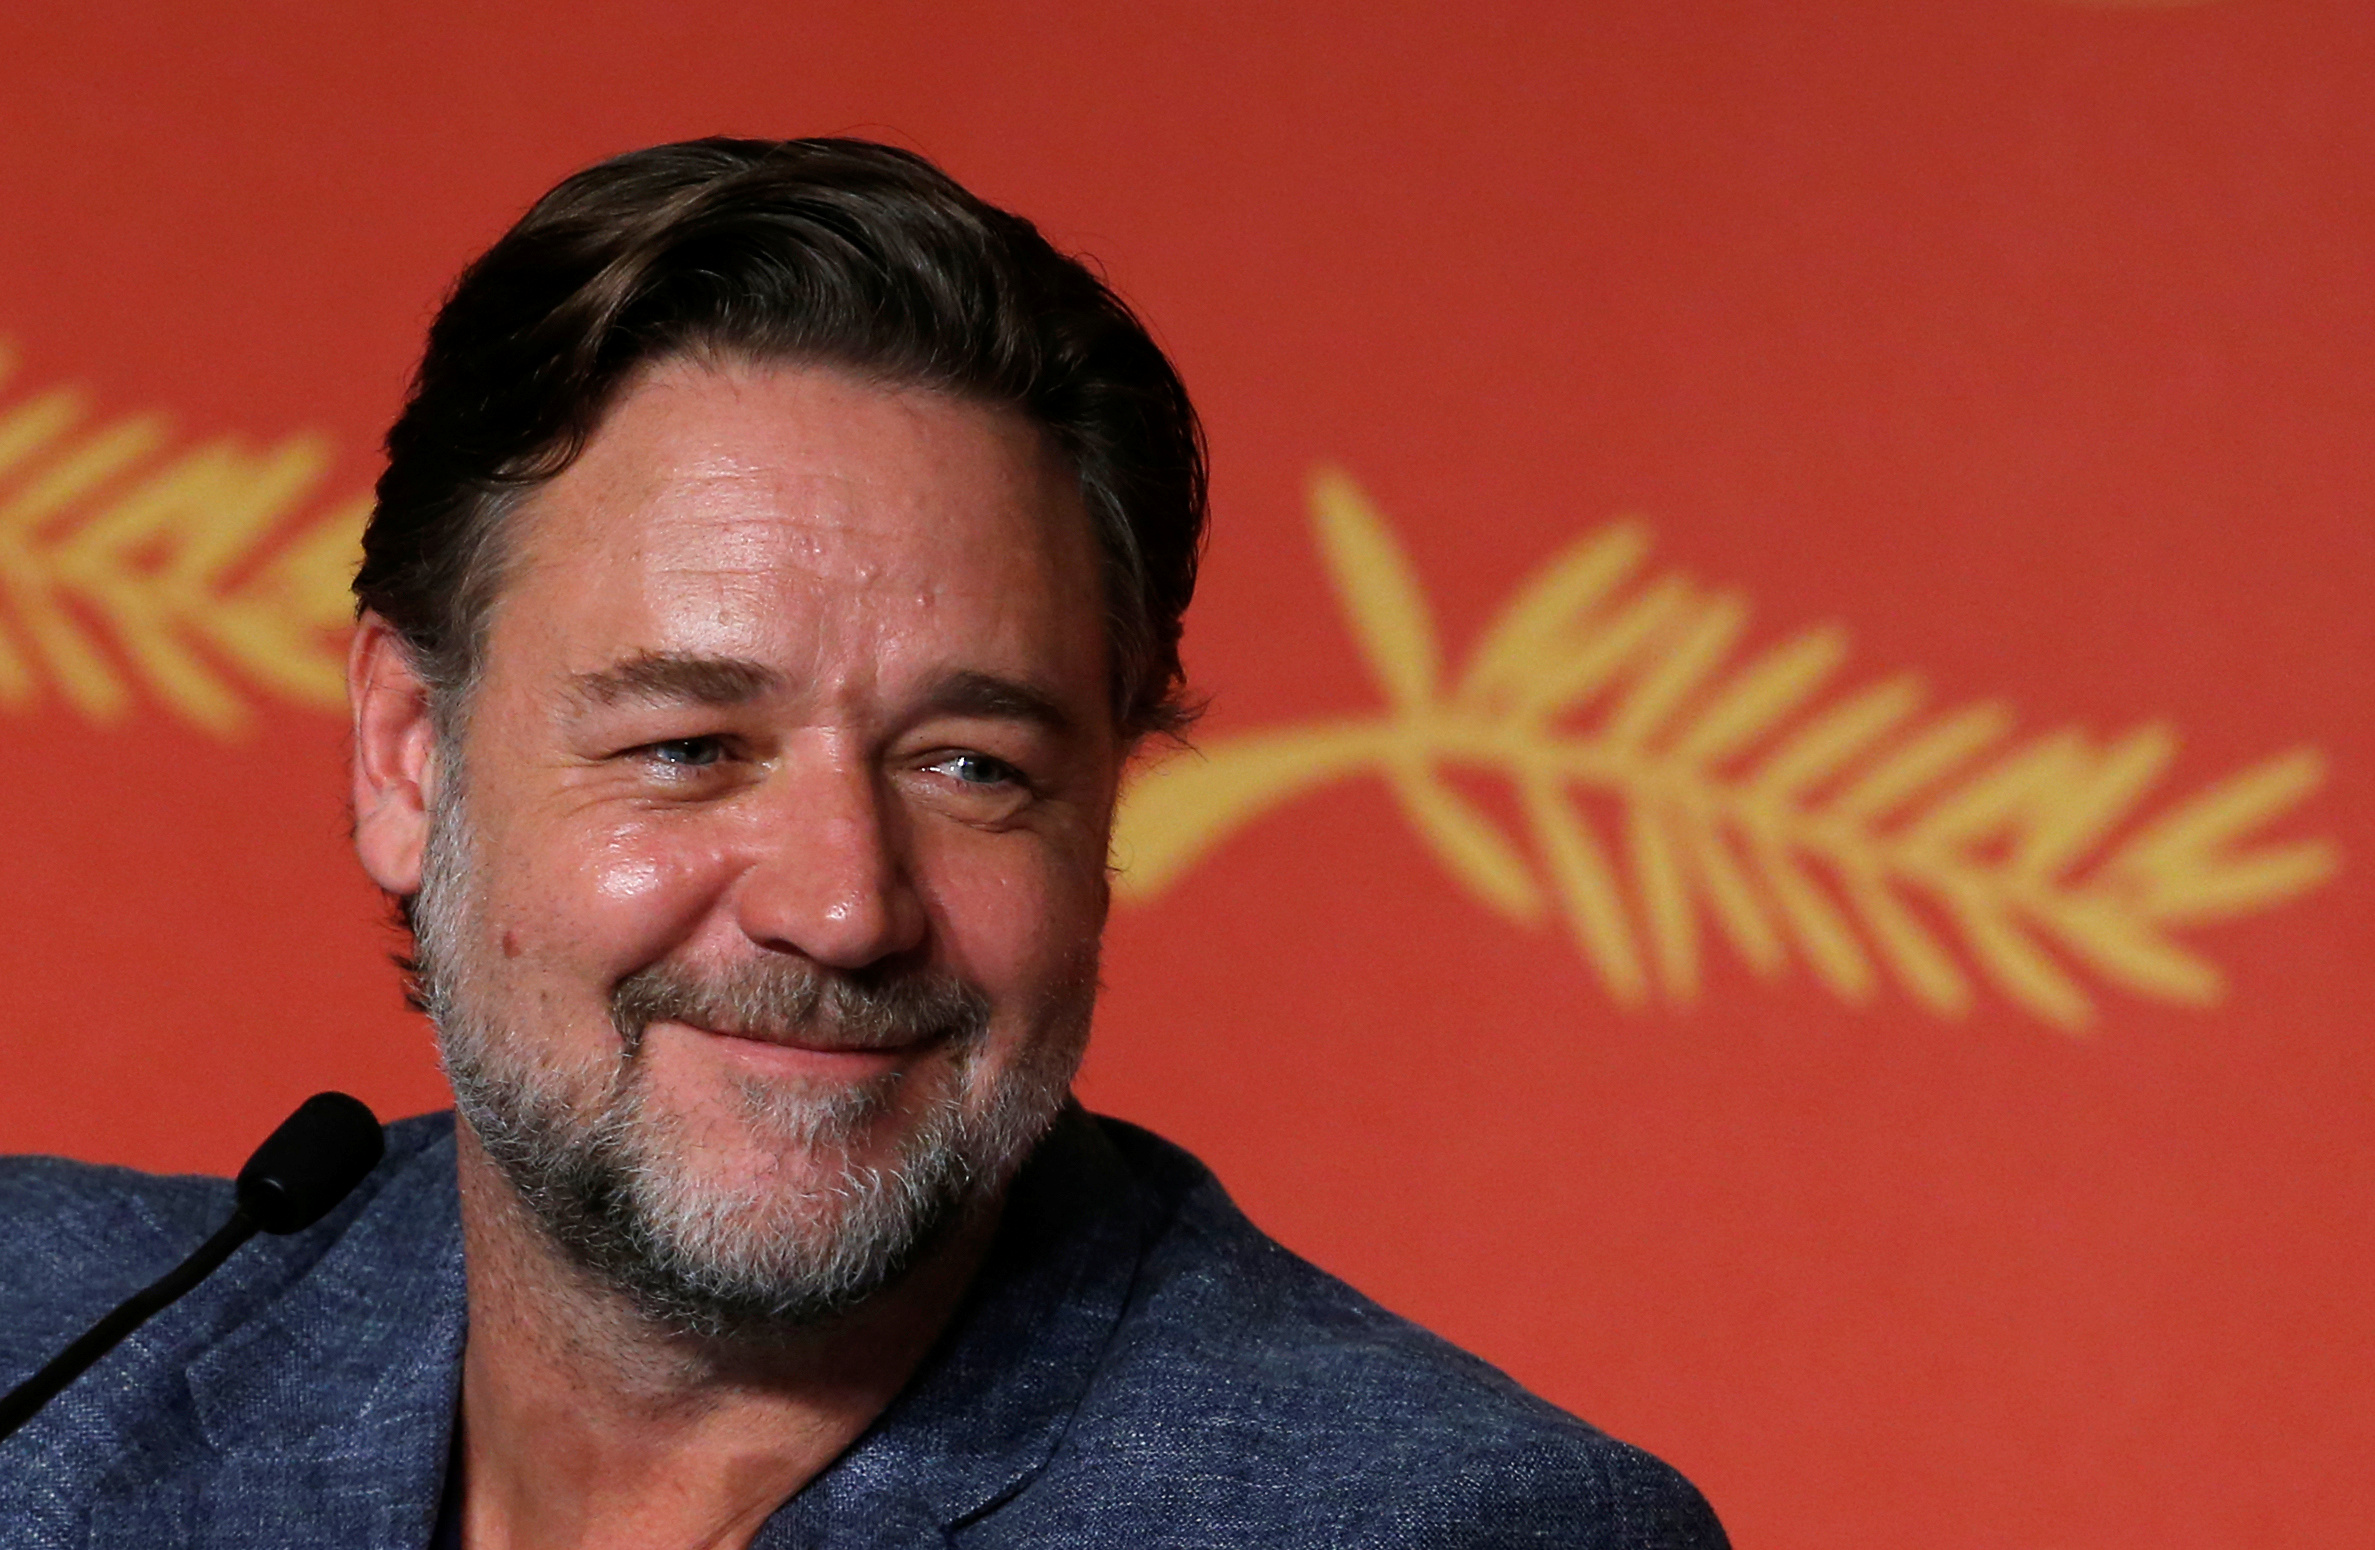 Russell Crowe: De camarero en Australia a Hollywood, soy la prueba  viviente de que todo es posible